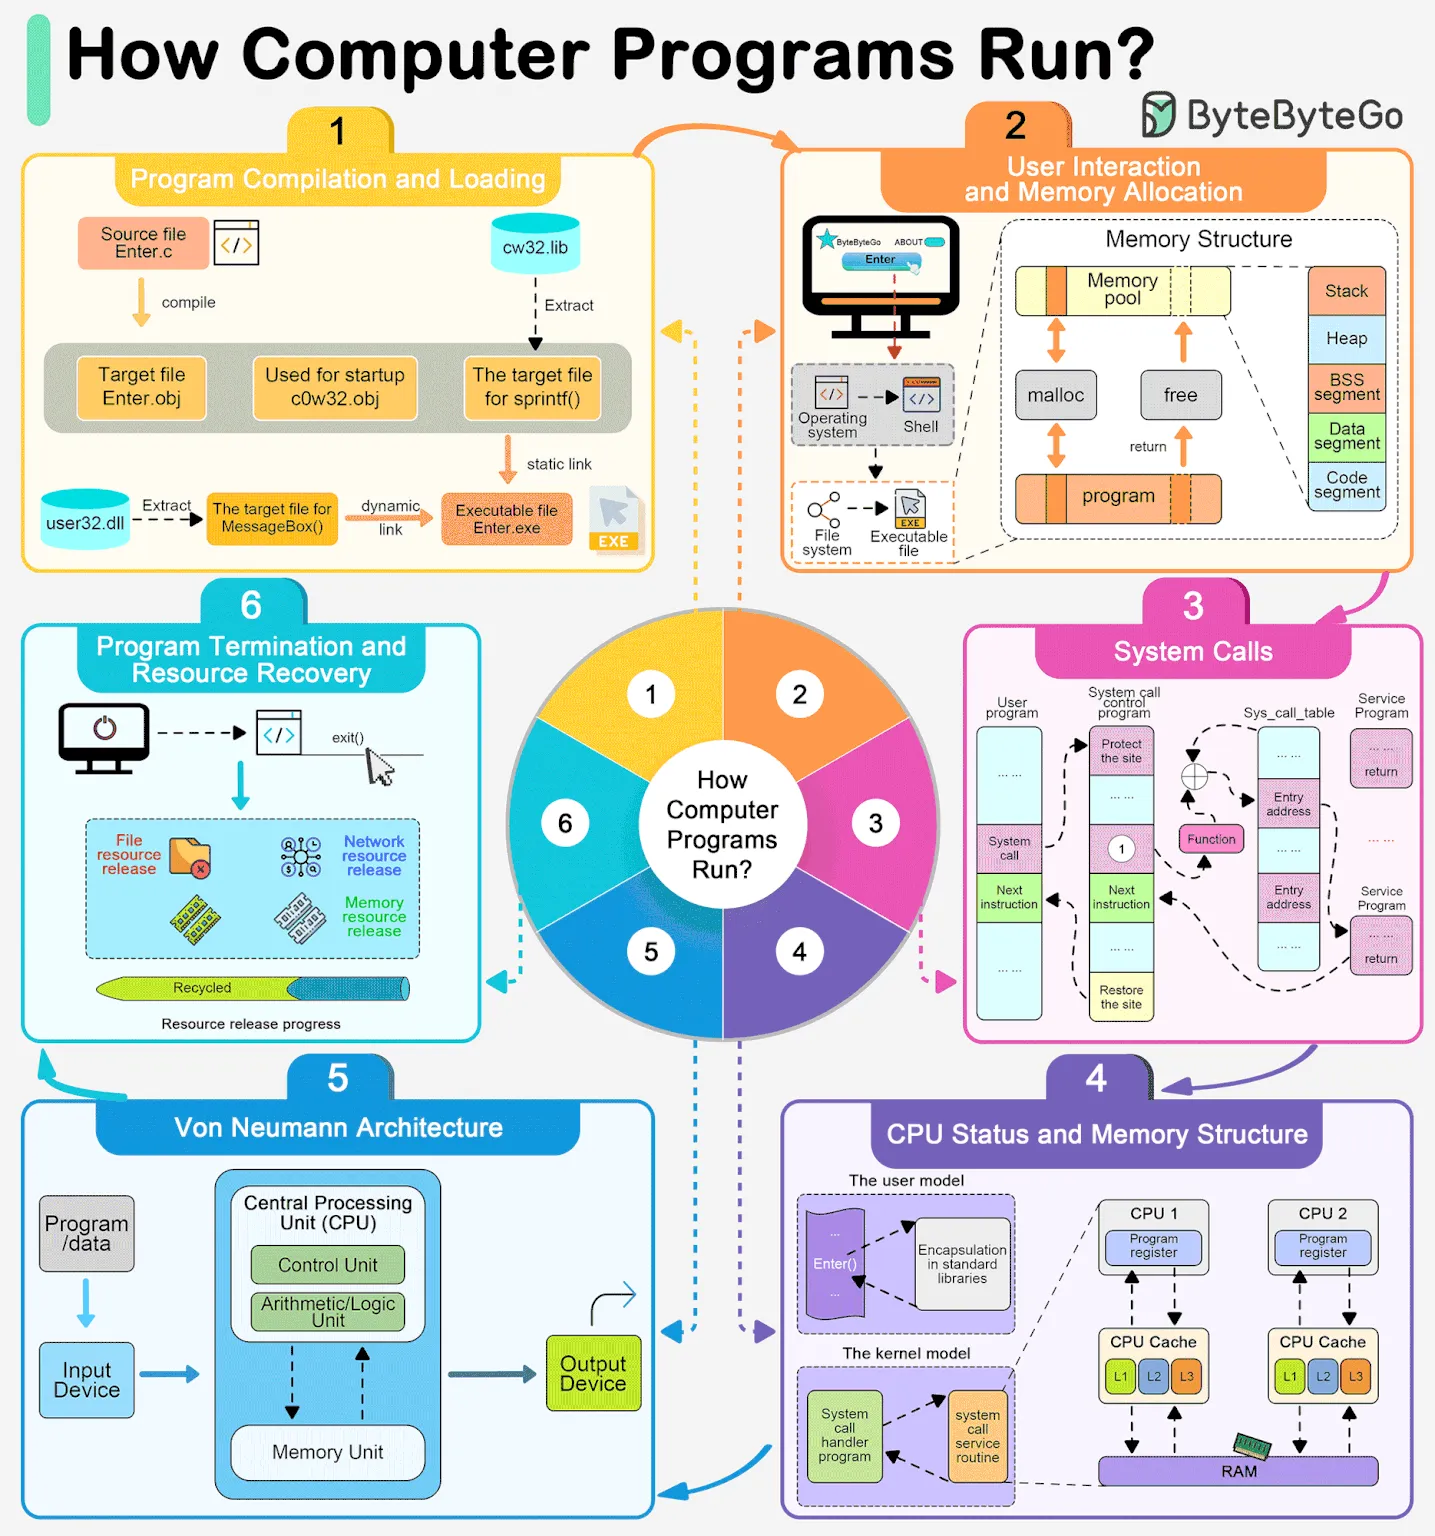 How do computer programs run? 